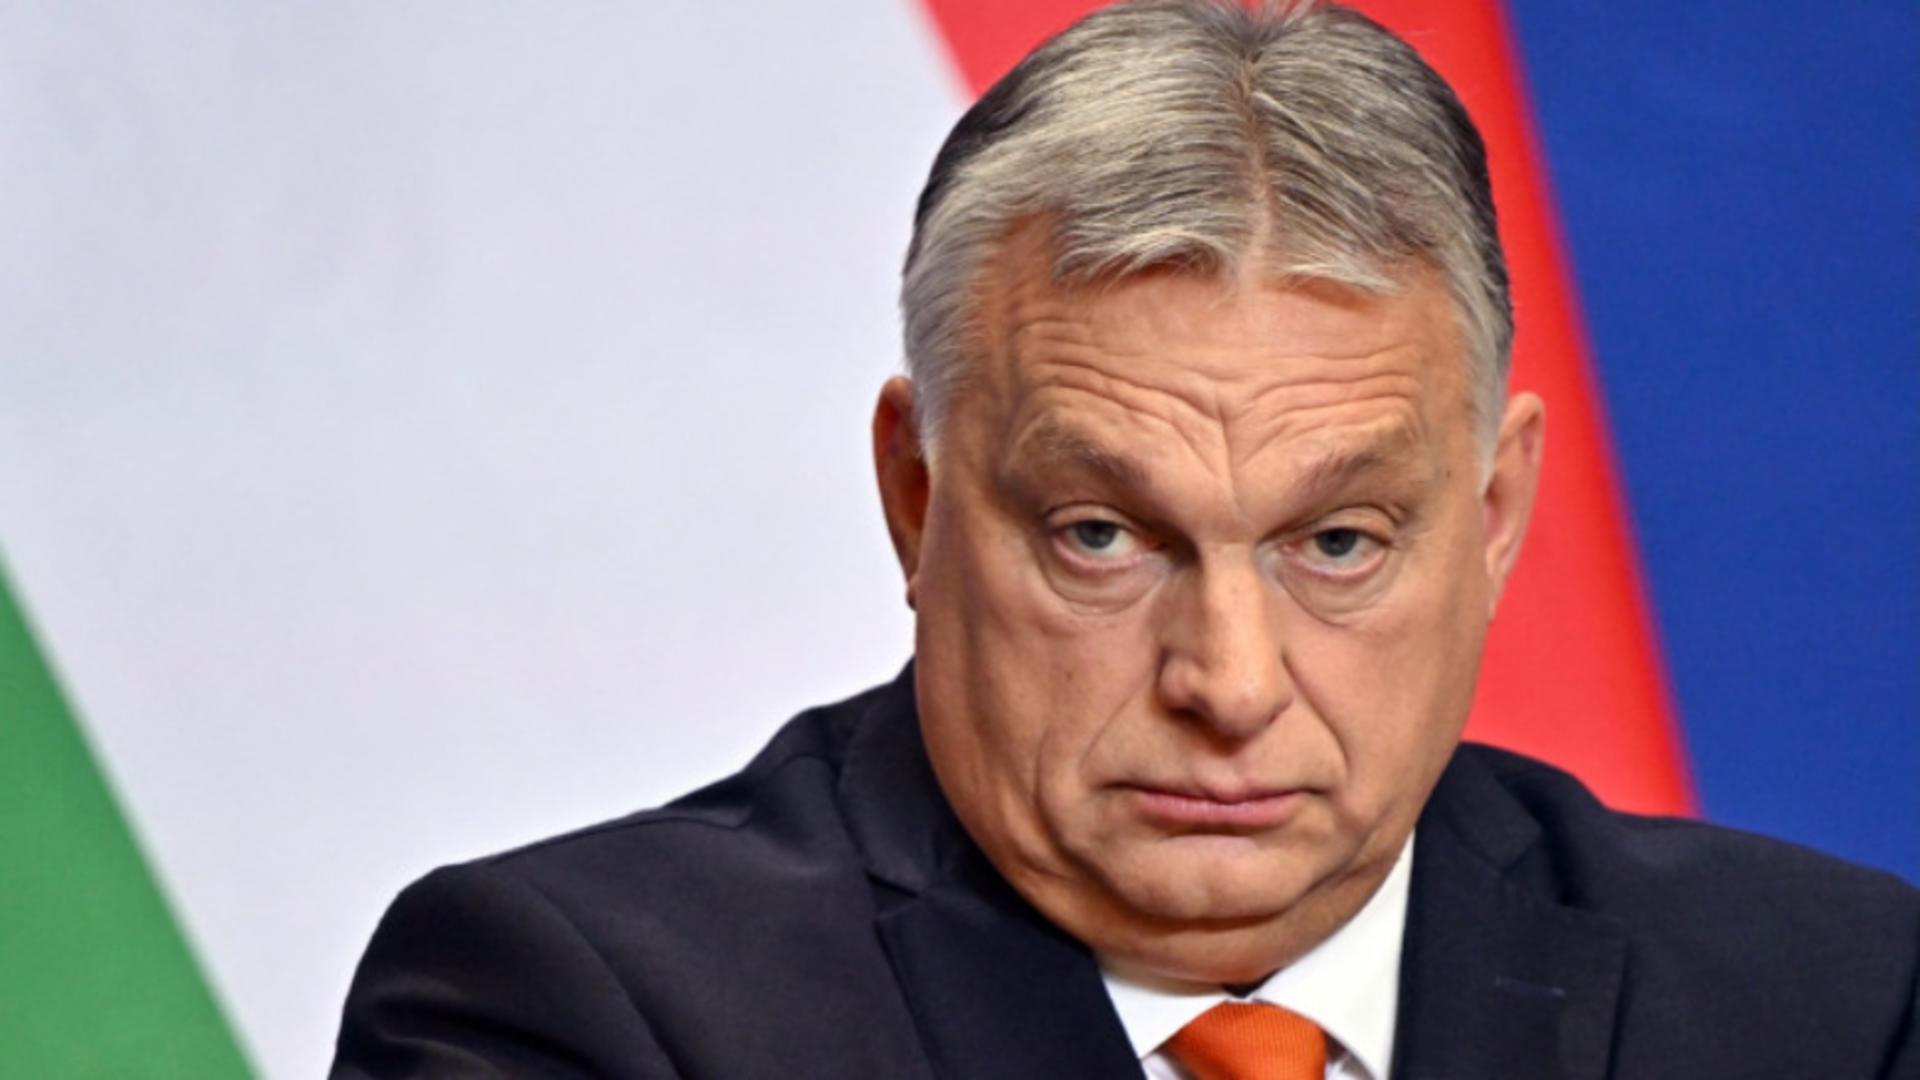 Omul Zilei – Viktor Orban. “Patria a priori!”. În atenția ROMÂNILOR din SRI